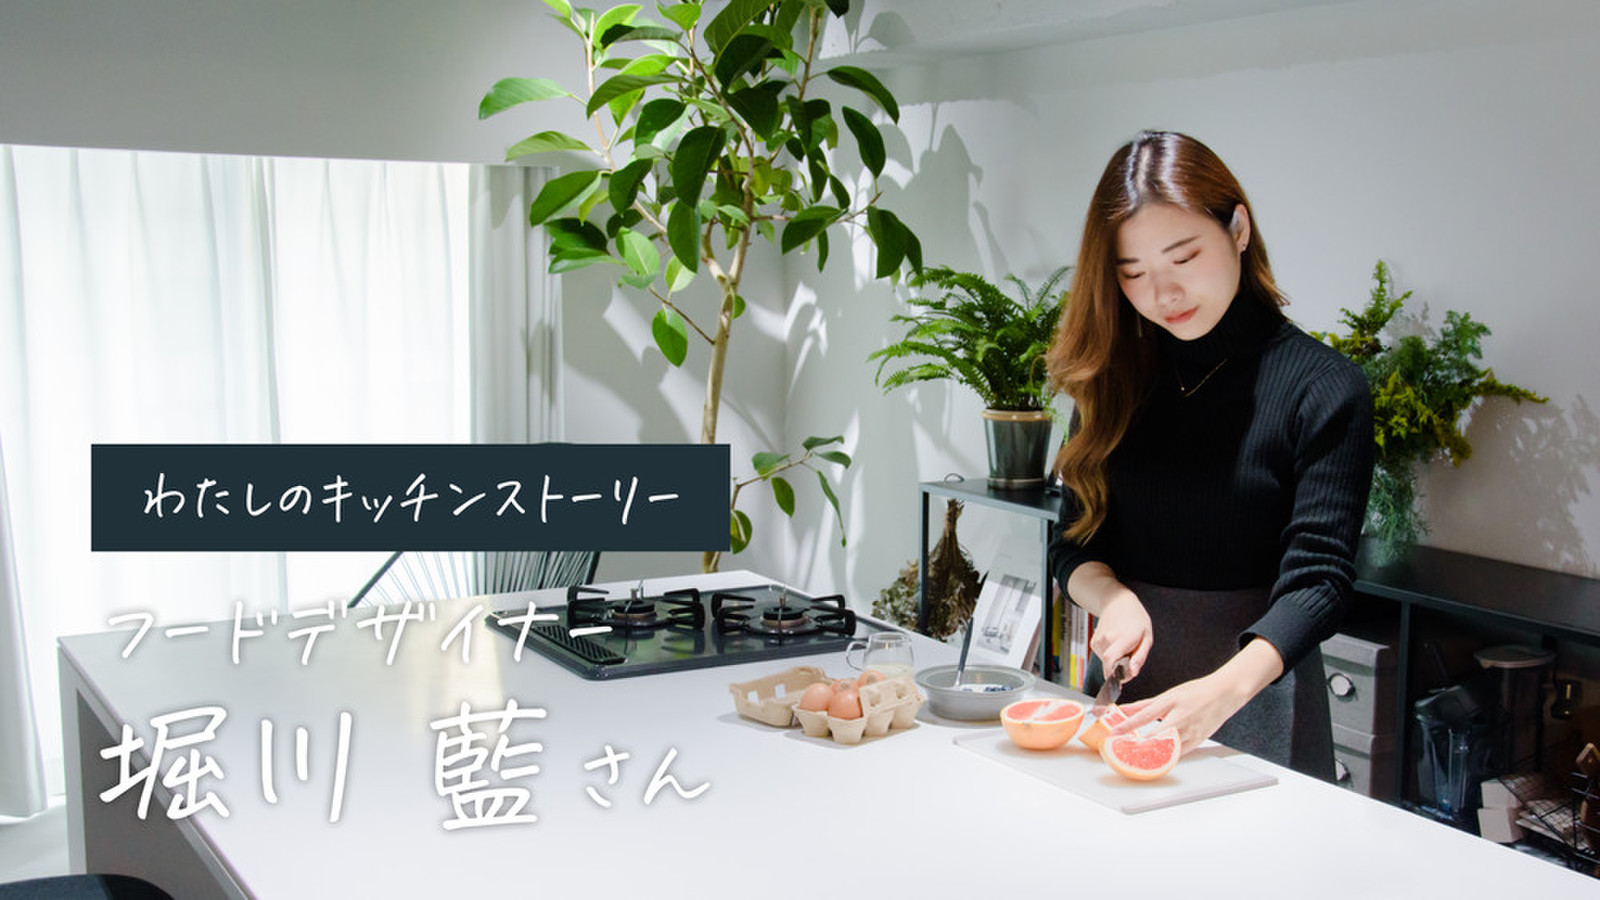 フードデザイナー・Ai Horikawaさんの暮らしの中心になるキッチン。真っ白なお皿に、わたしだけの料理を仕立てるフルリノベーション